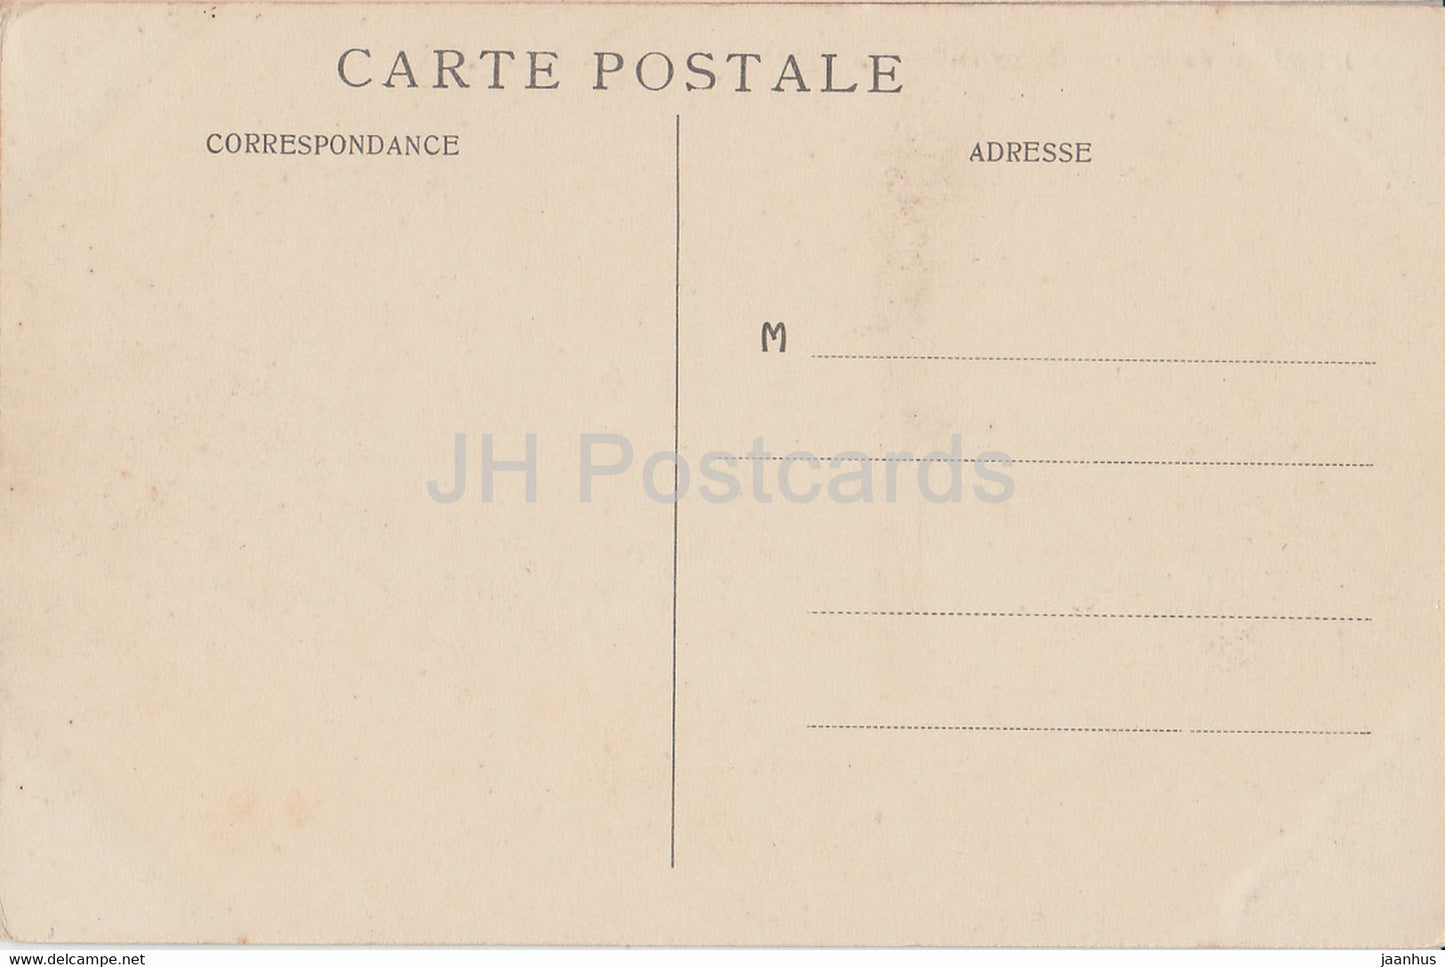 Environs de Laon - Coucy le Château - Vue Générale du Château - château - 1 - carte postale ancienne - France - occasion